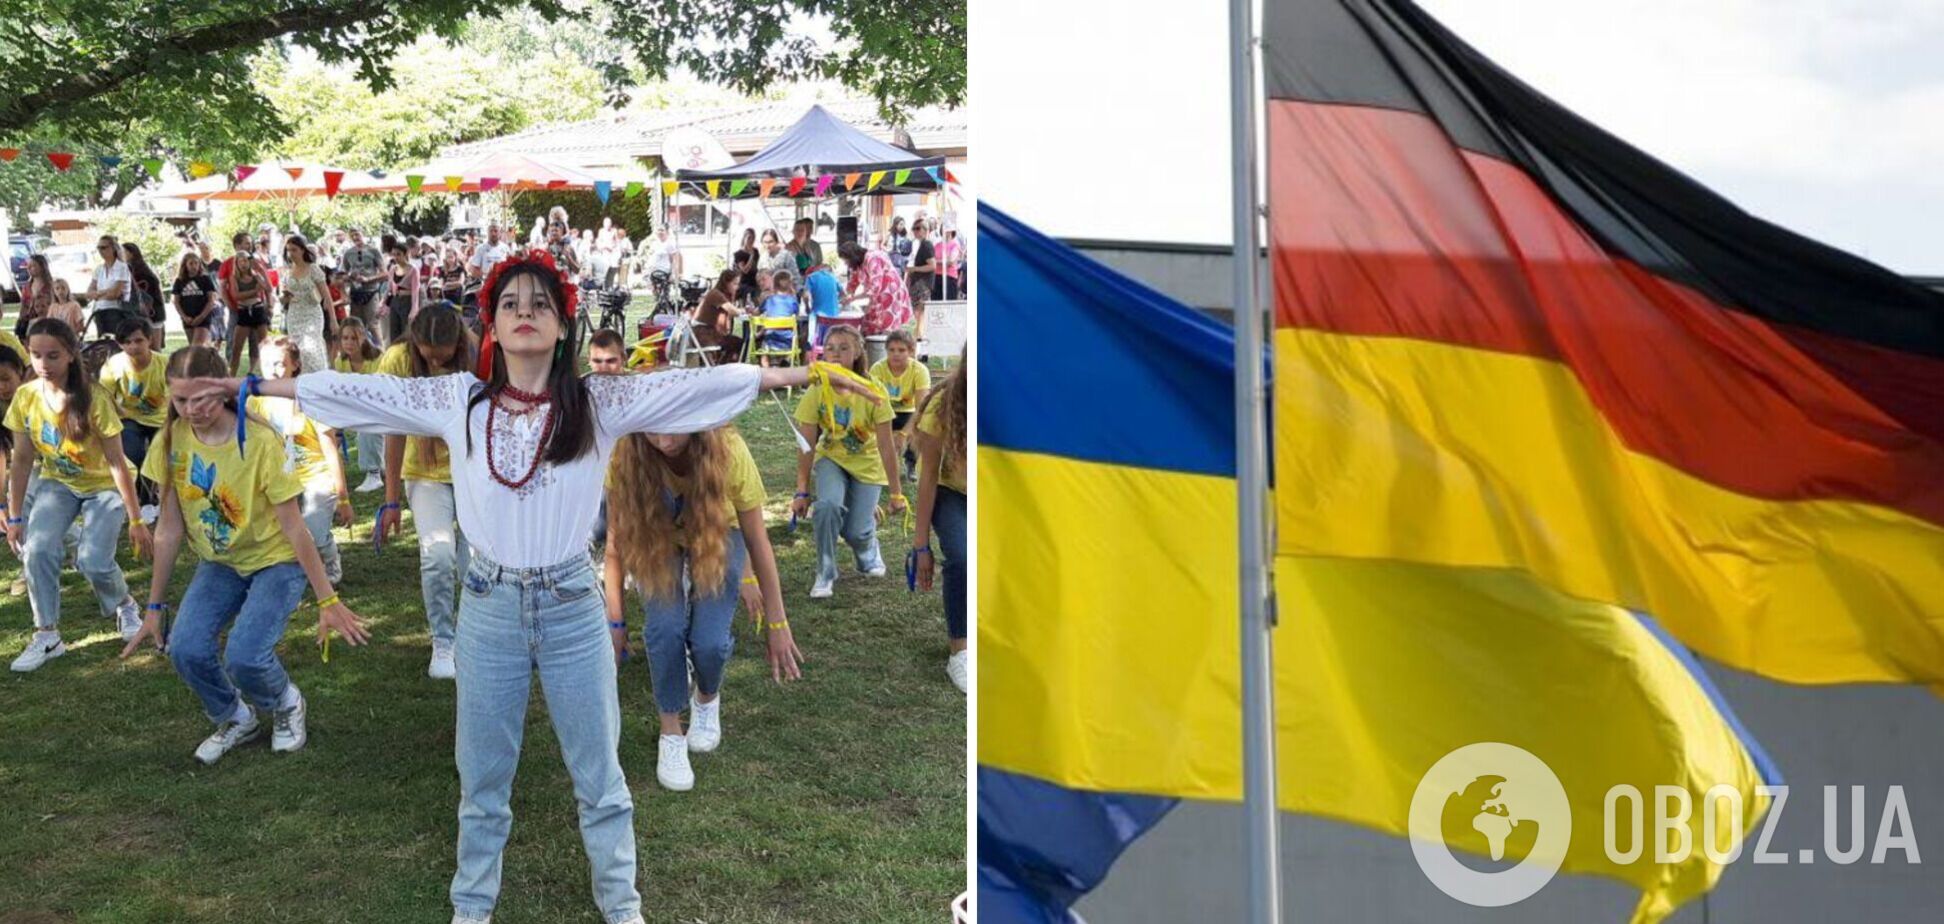 'Я – Україна' В Германии украинские дети показали чувственный танец под хит Насти Каменских. Фото и видео